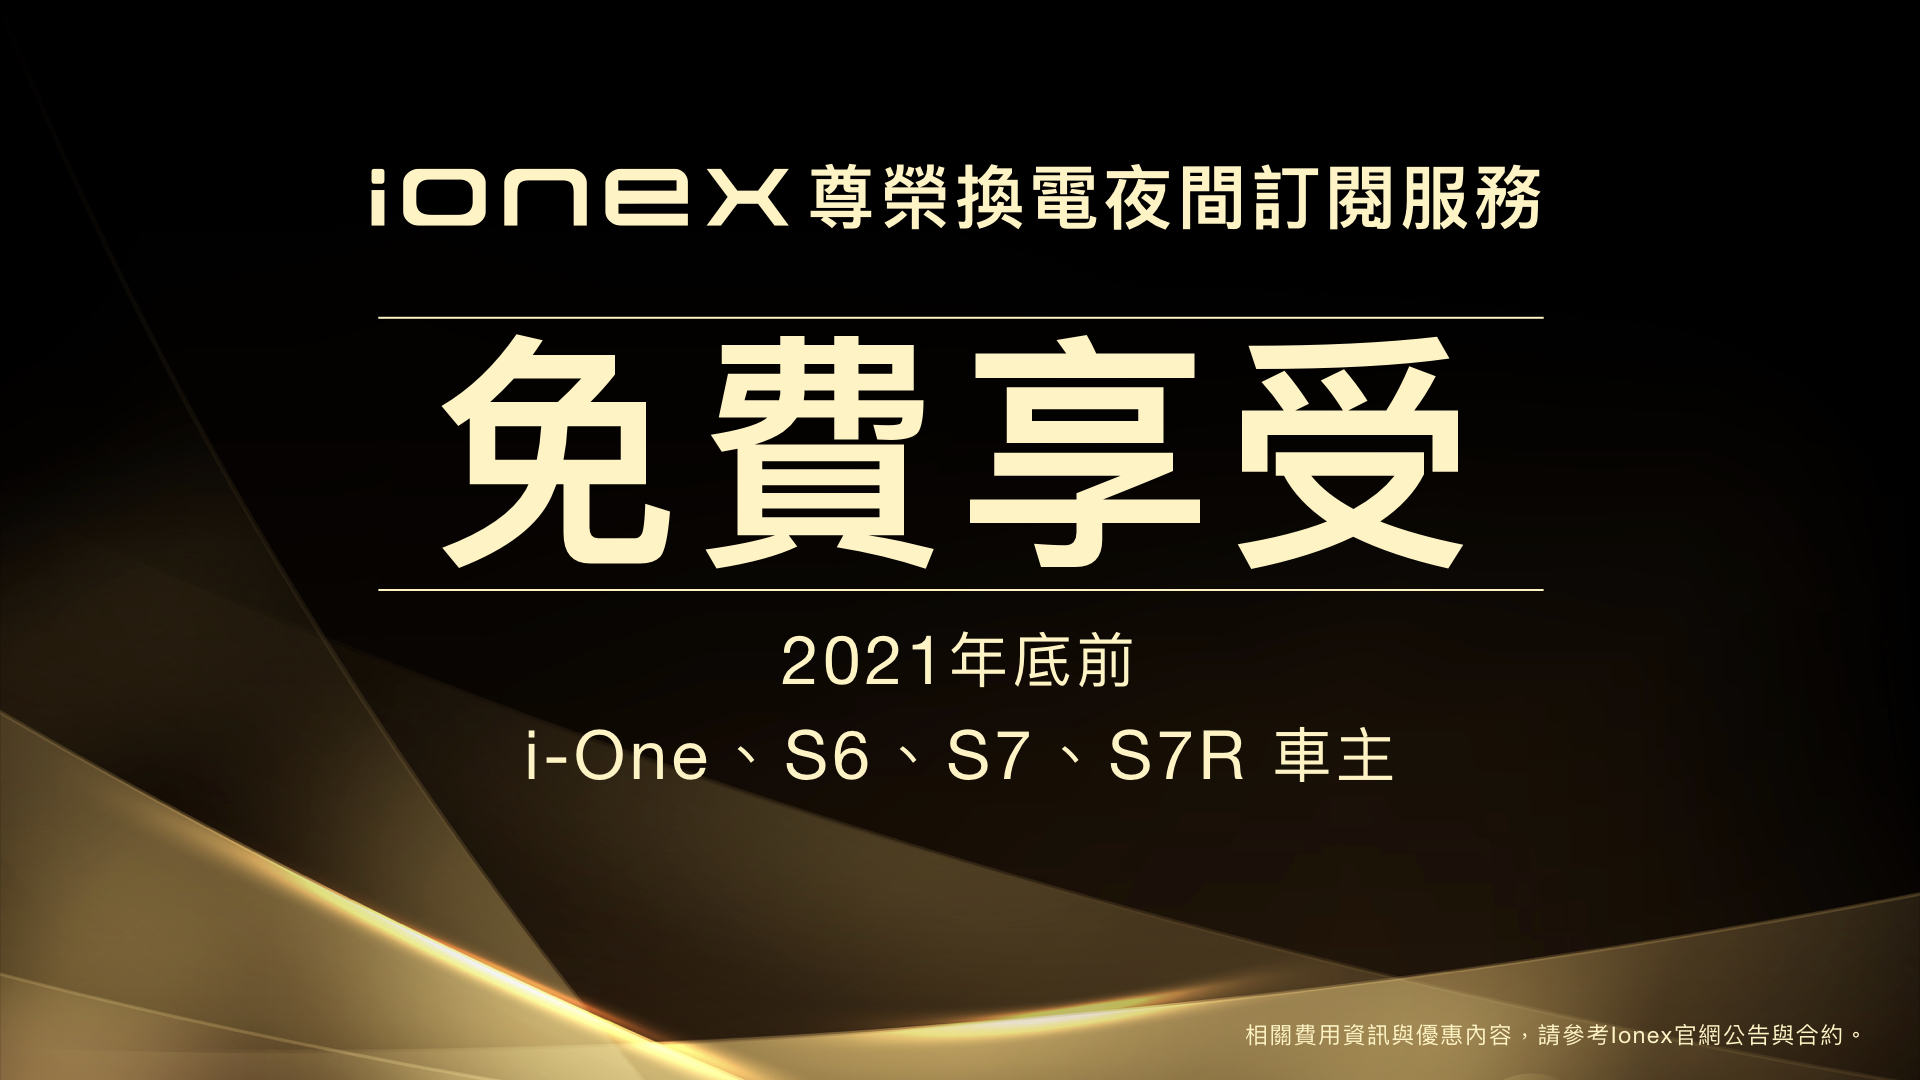 試營運期間Ionex 3.0的車主還能免費享受這項尊榮換電服務